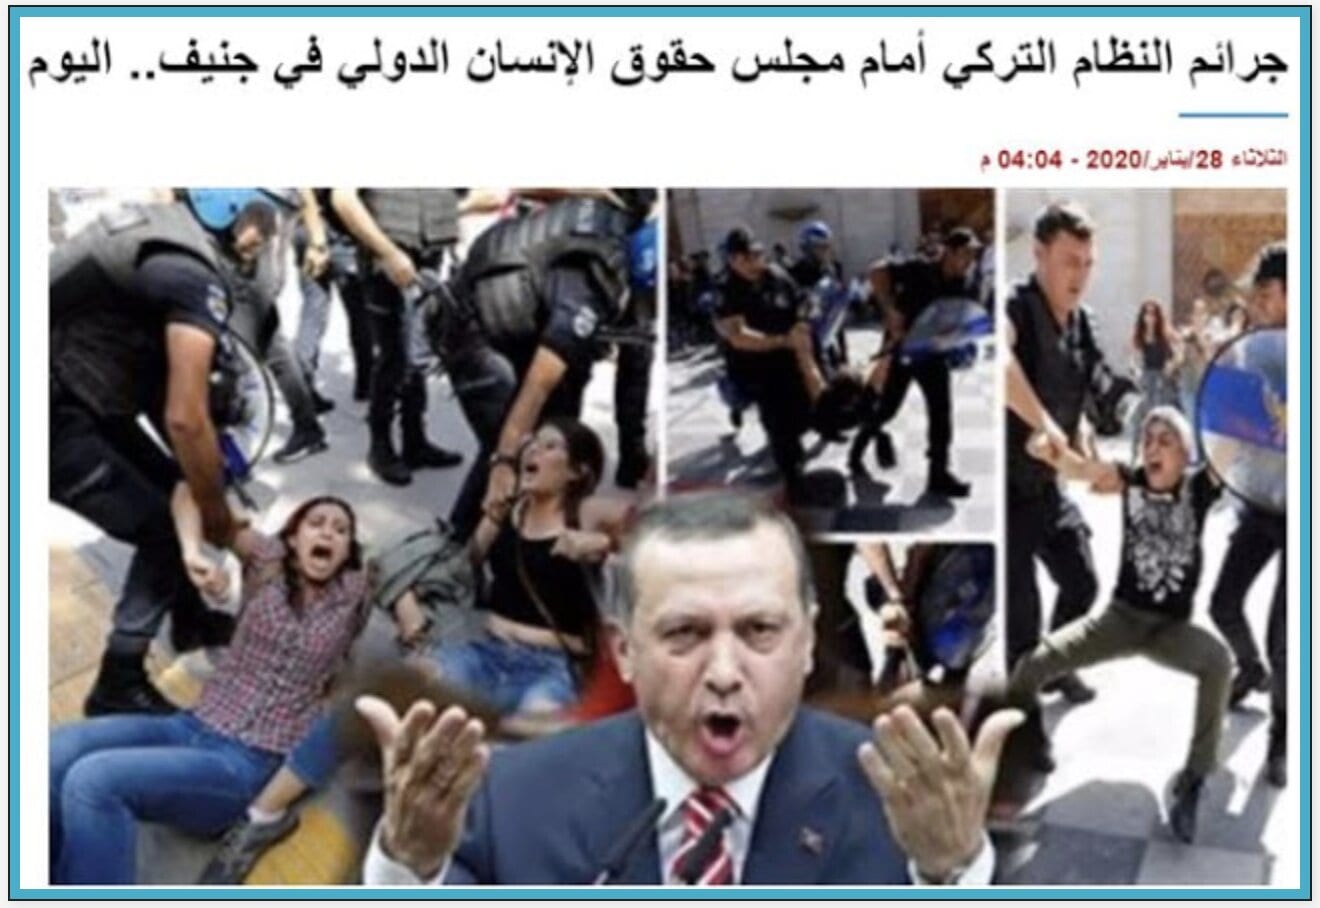 Τα εγκλήματα του τουρκικού καθεστώτος ενώπιον του Διεθνούς Συμβουλίου Ανθρωπίνων Δικαιωμάτων στη Γενεύη – σήμερα